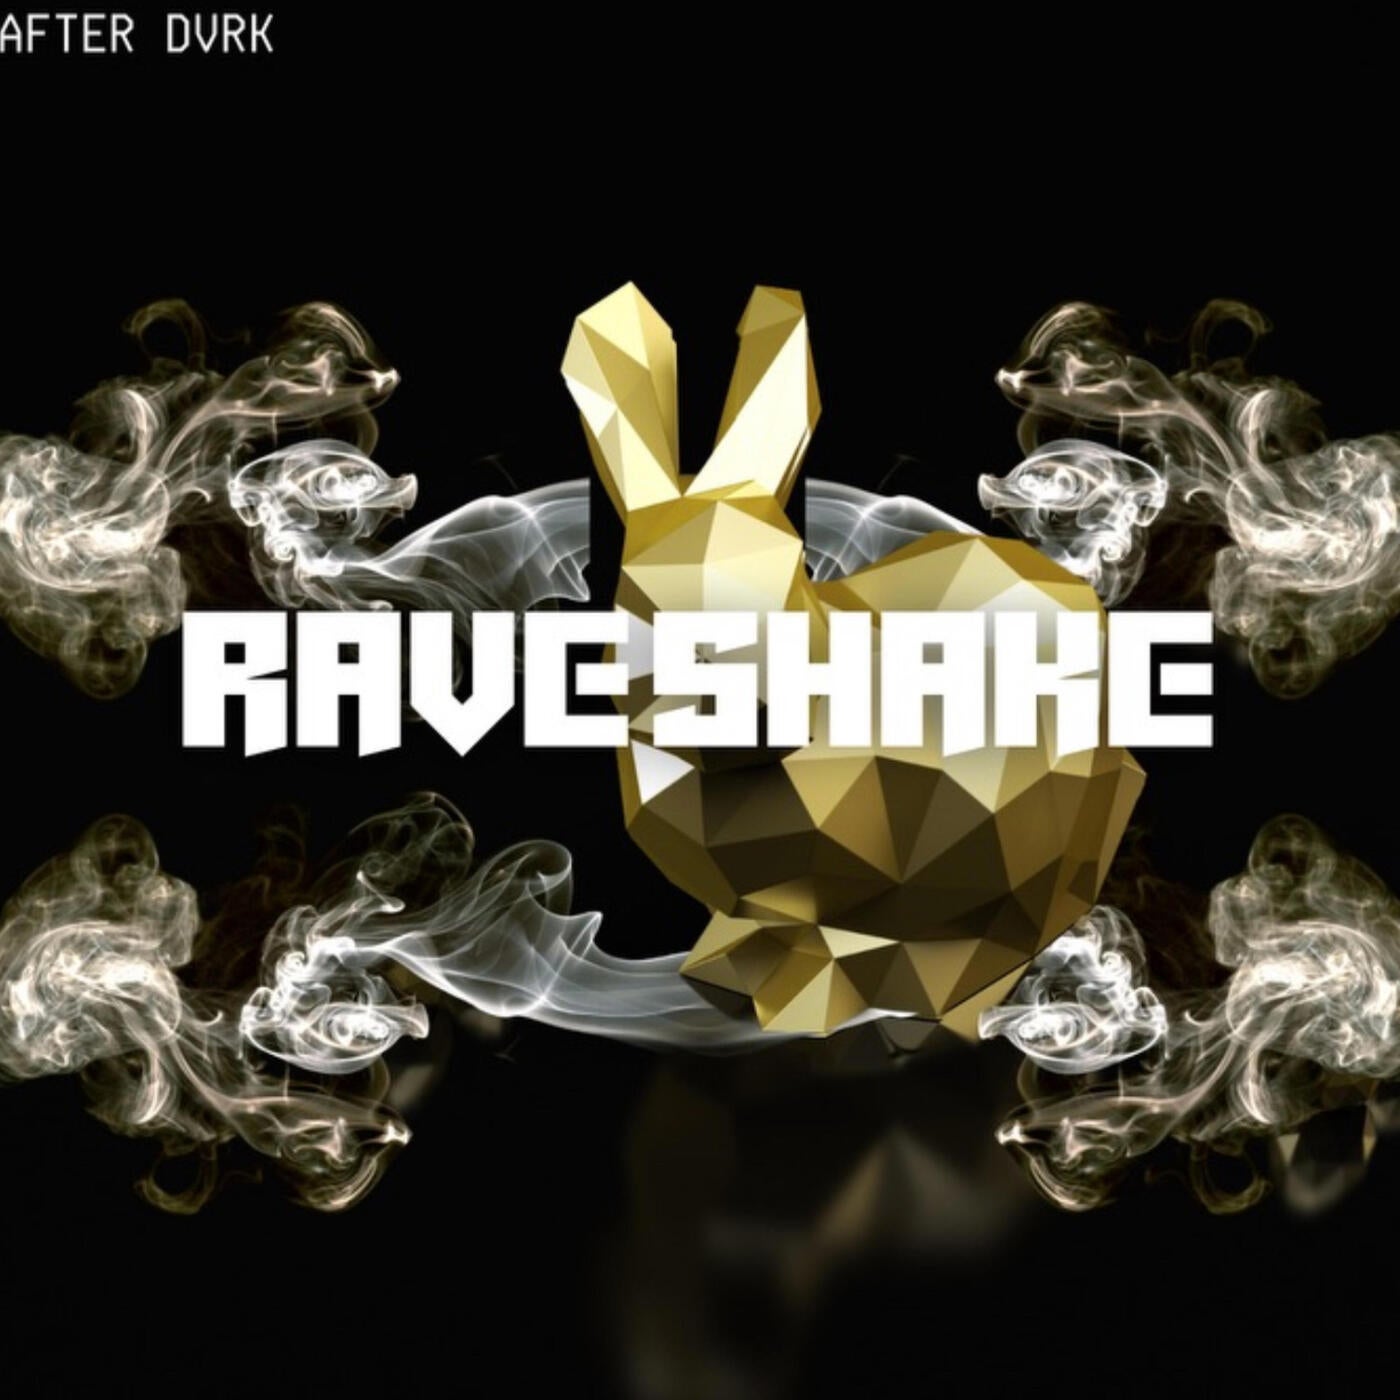 Rave Shake